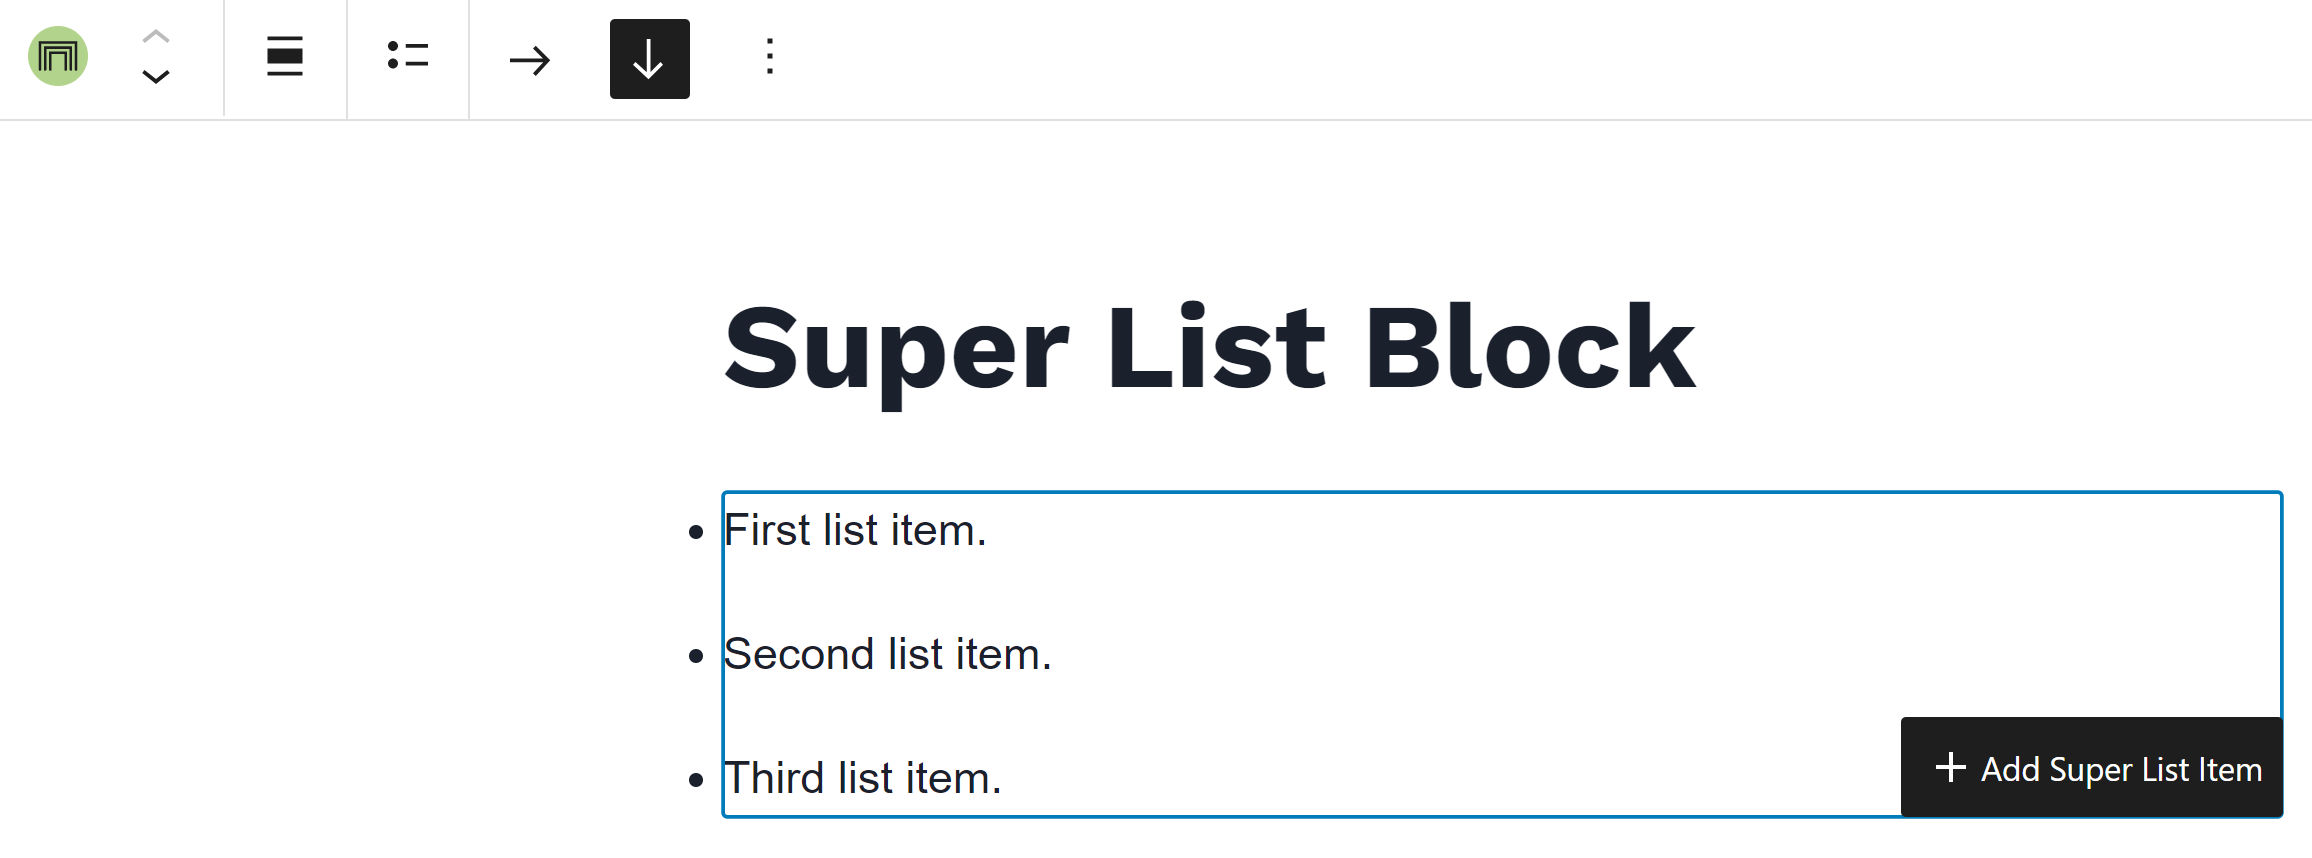 Une liste non ordonnée dans l'éditeur WordPress.  En bas à droite, il y a un bouton qui indique "+ Ajouter un élément de super liste".